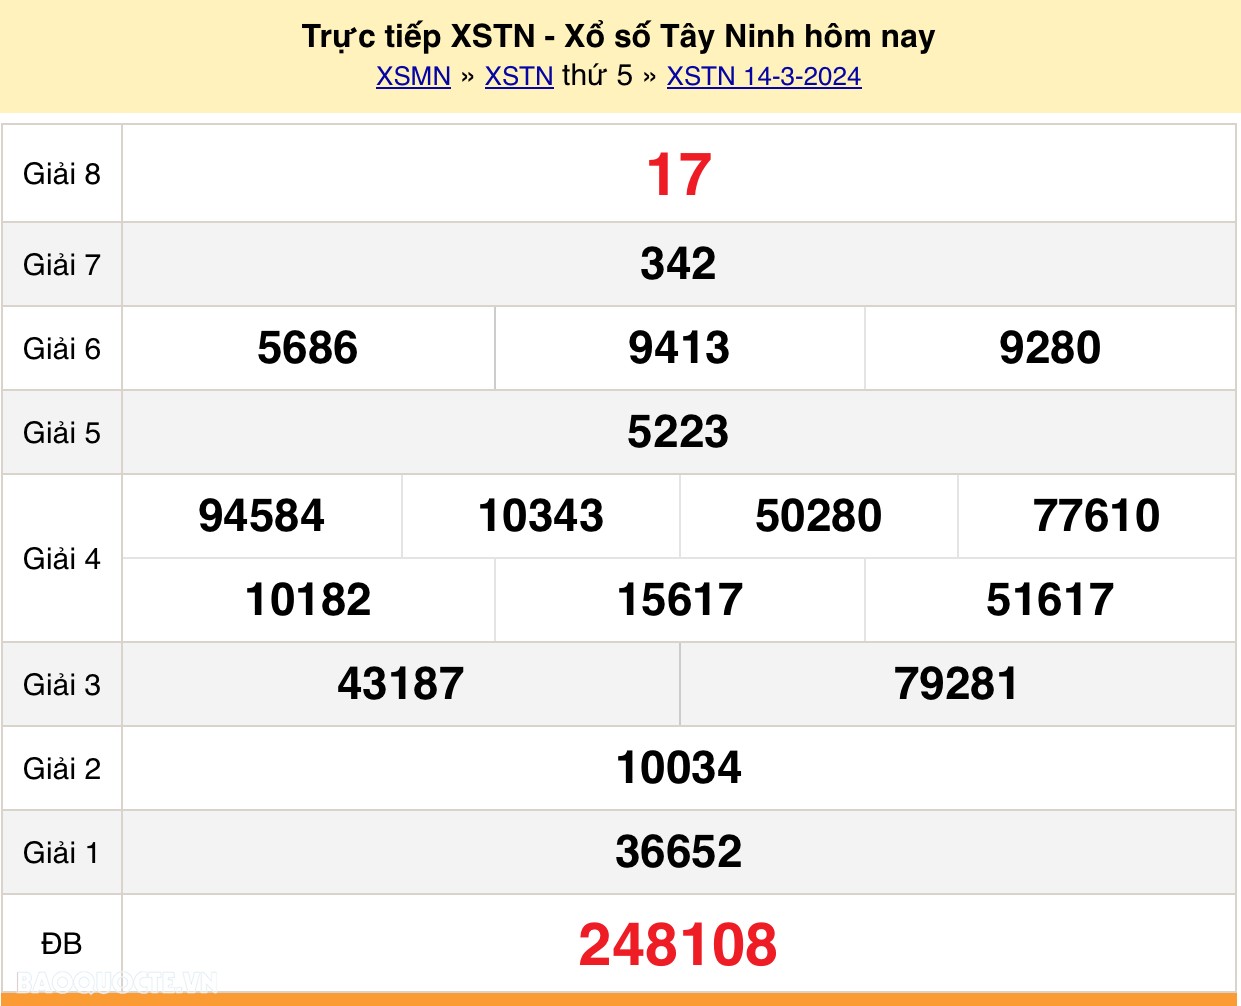 XSTN 21/3, trực tiếp kết quả xổ số Tây Ninh hôm nay 21/3/2024. KQXSTN thứ 5